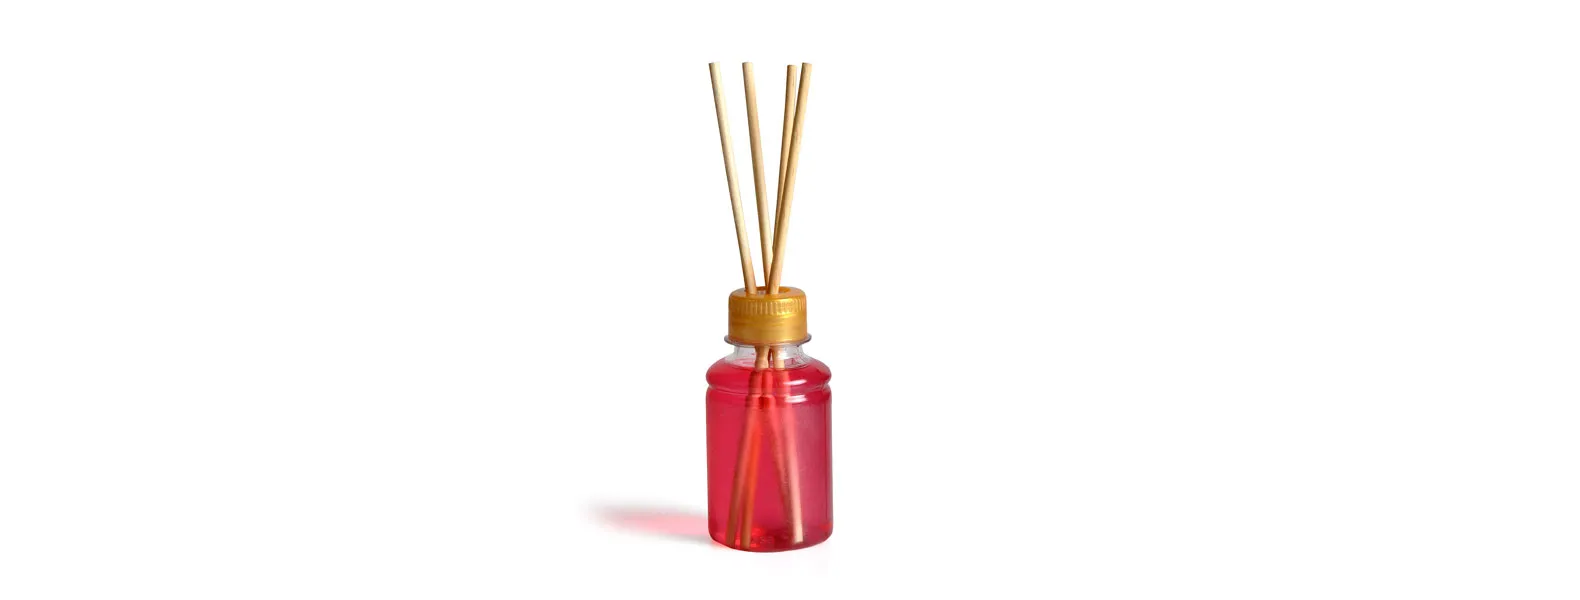 Kit para bandeja e aromatizador. Conta com bandeja redonda em bambu e aromatizador de ambiente com fragrância de cereja e avelã.